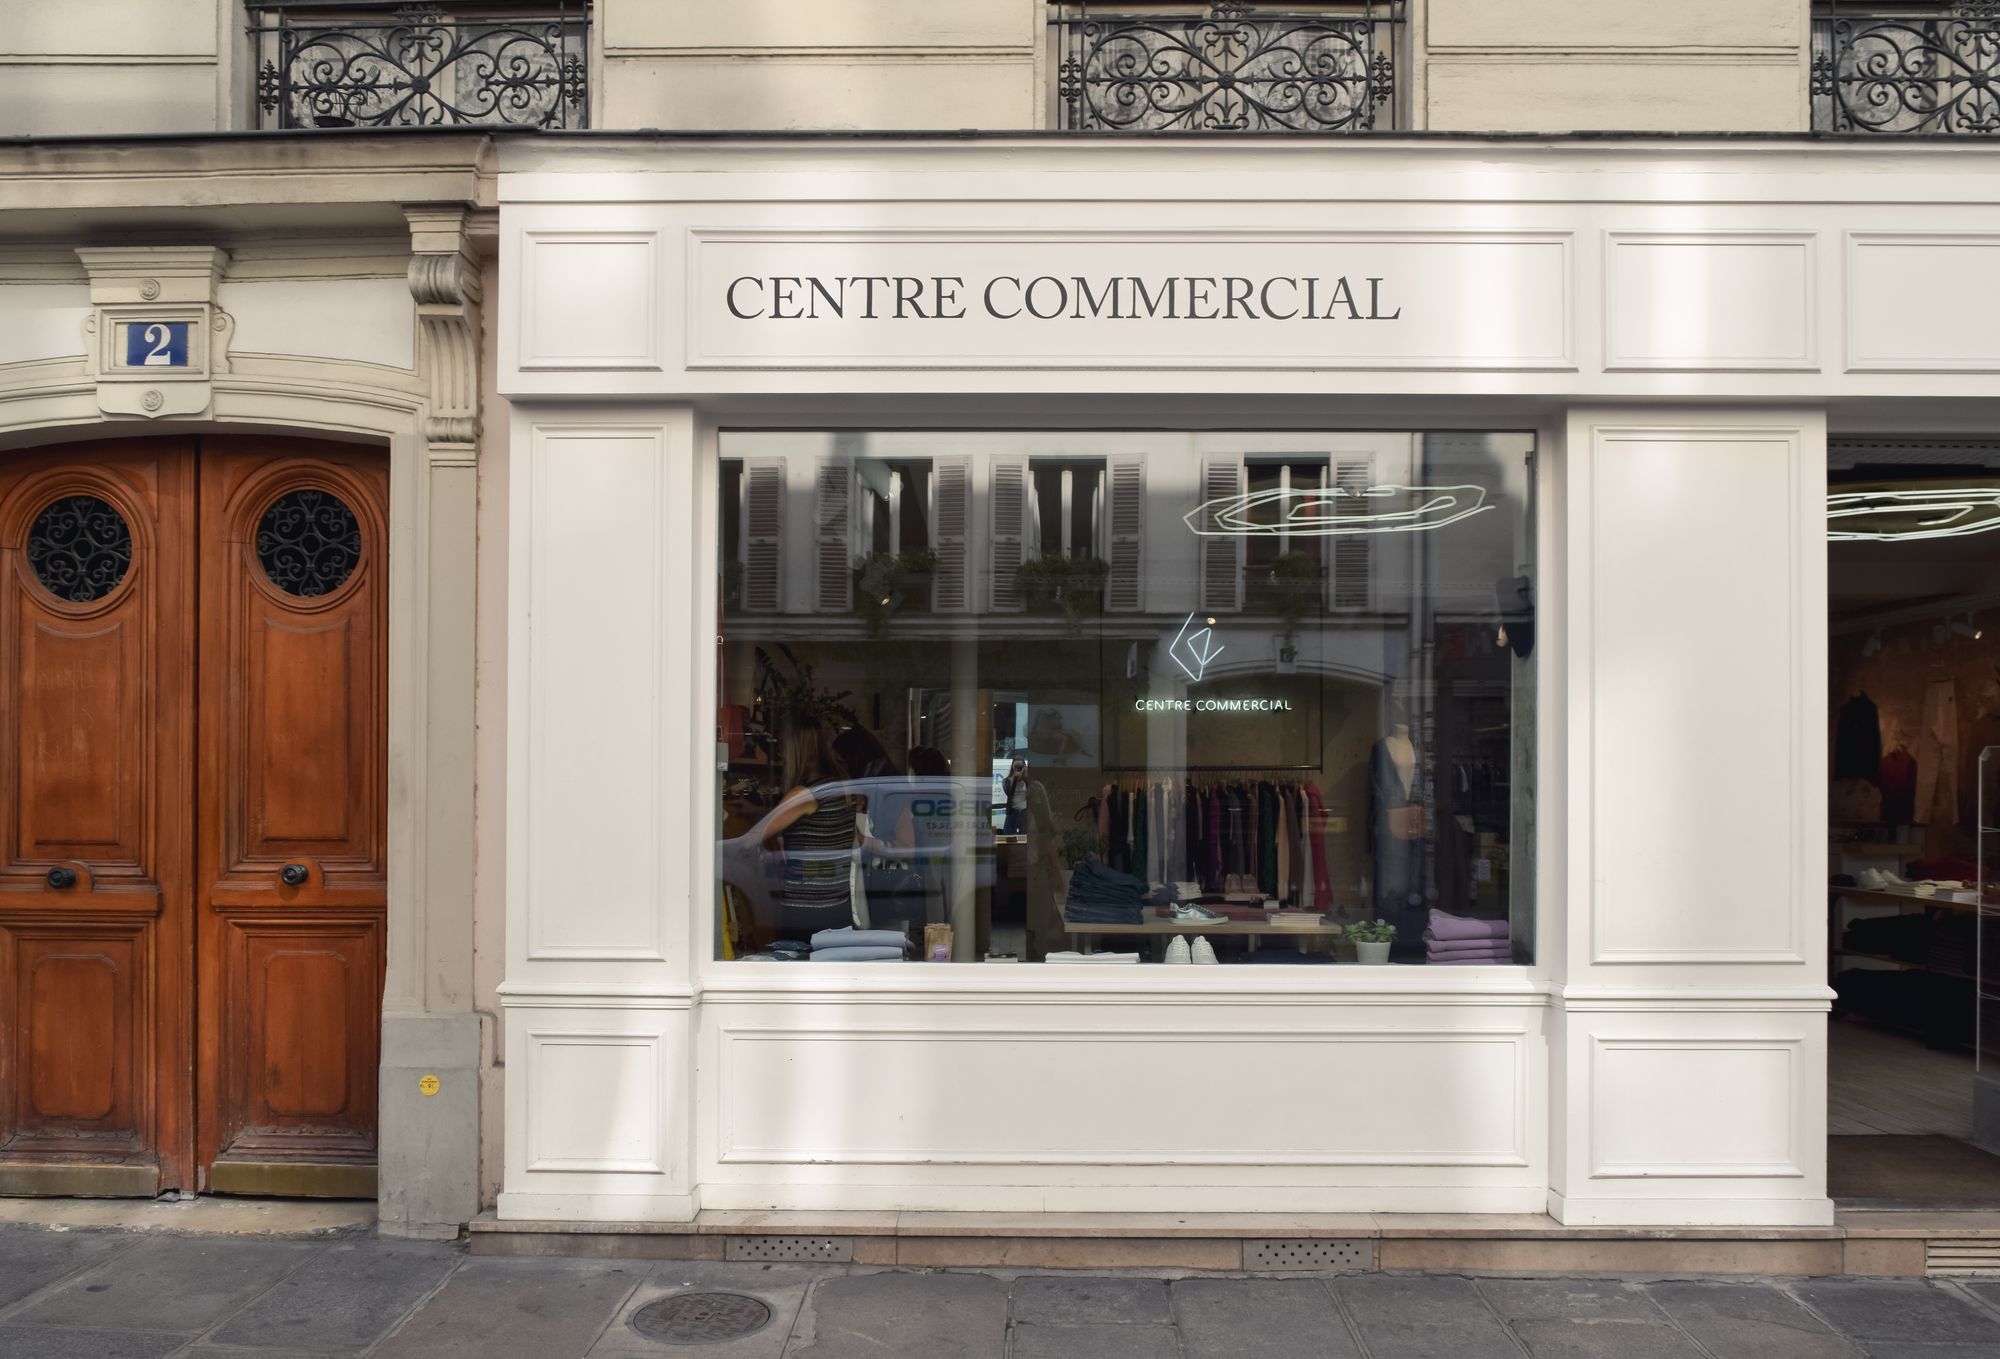 Centre Commercial Shop in Paris